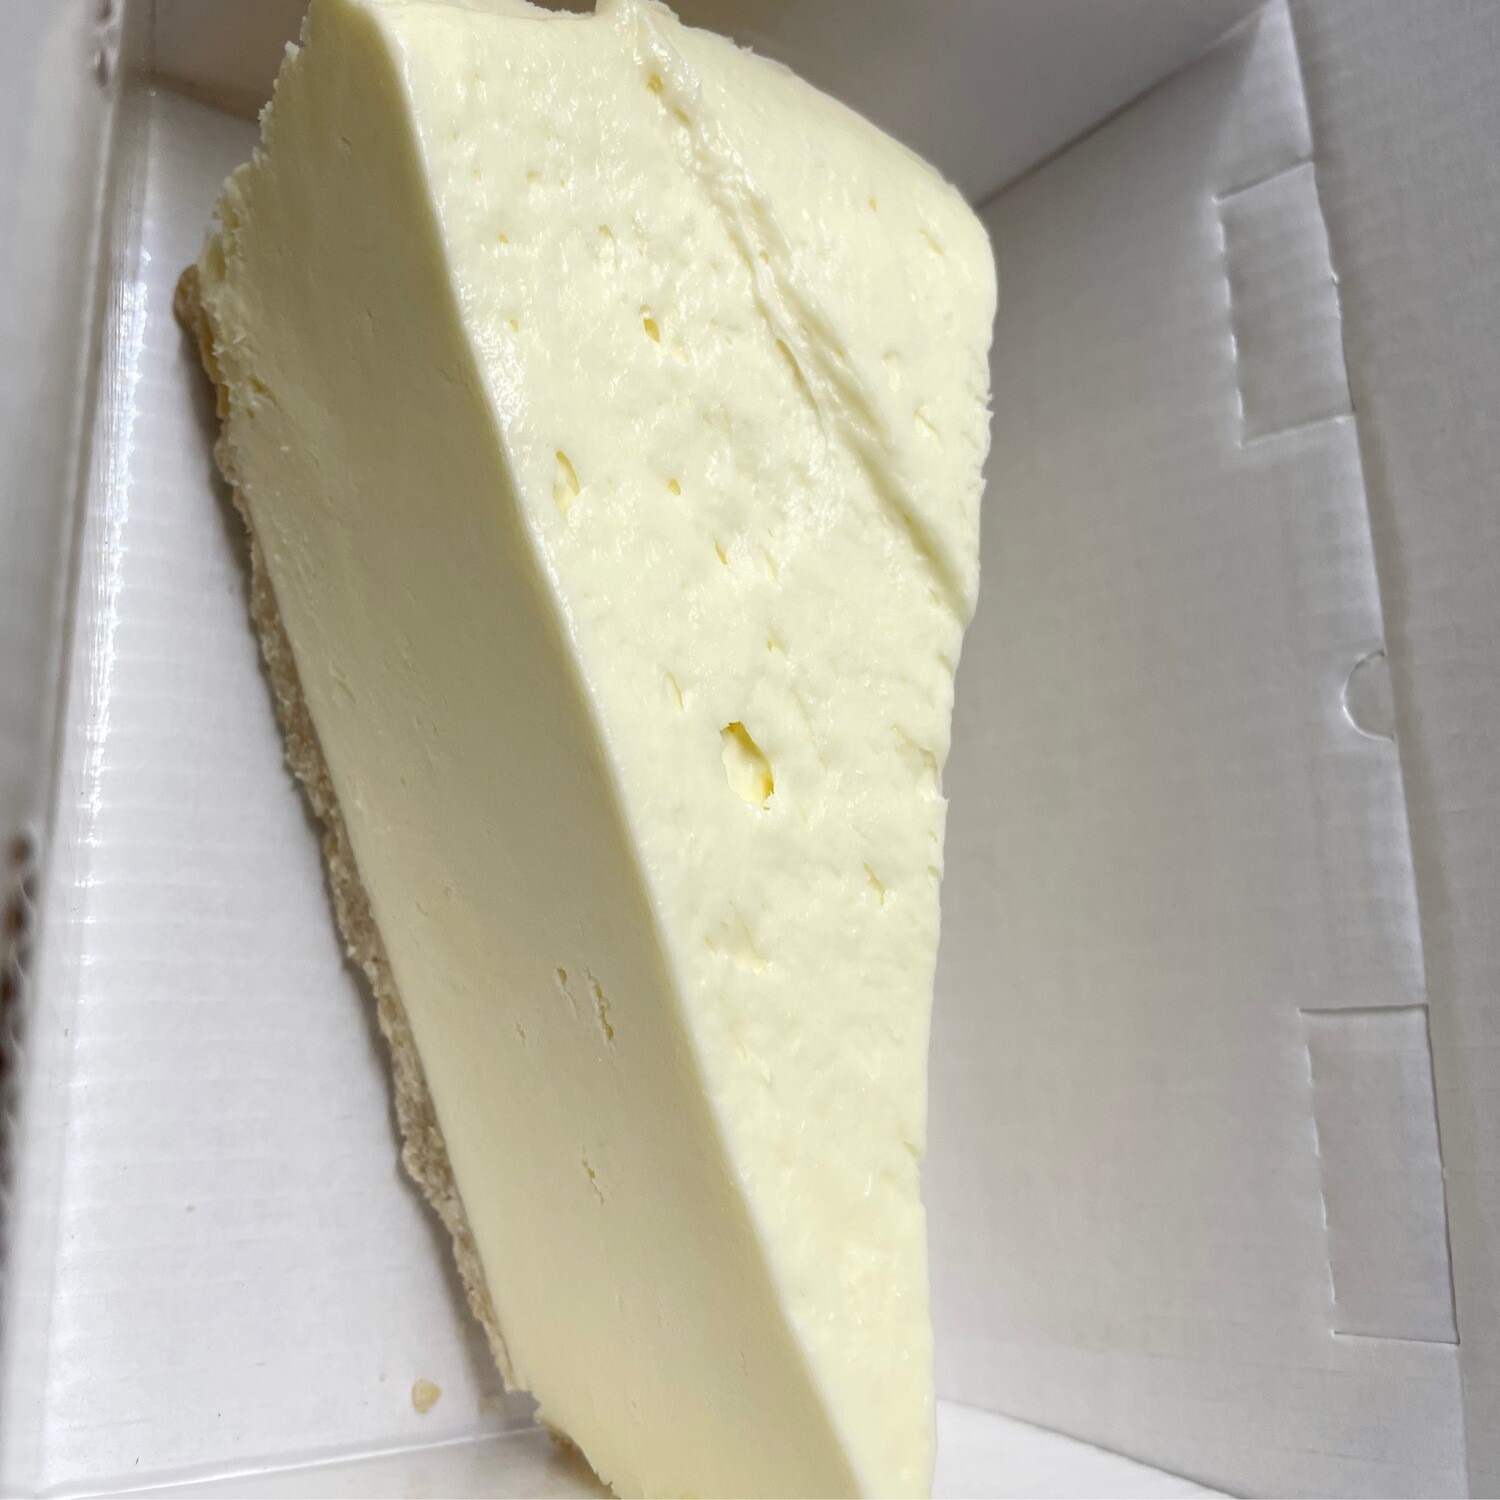 VEGAN GF Vanilla Cheesecake (Slice)